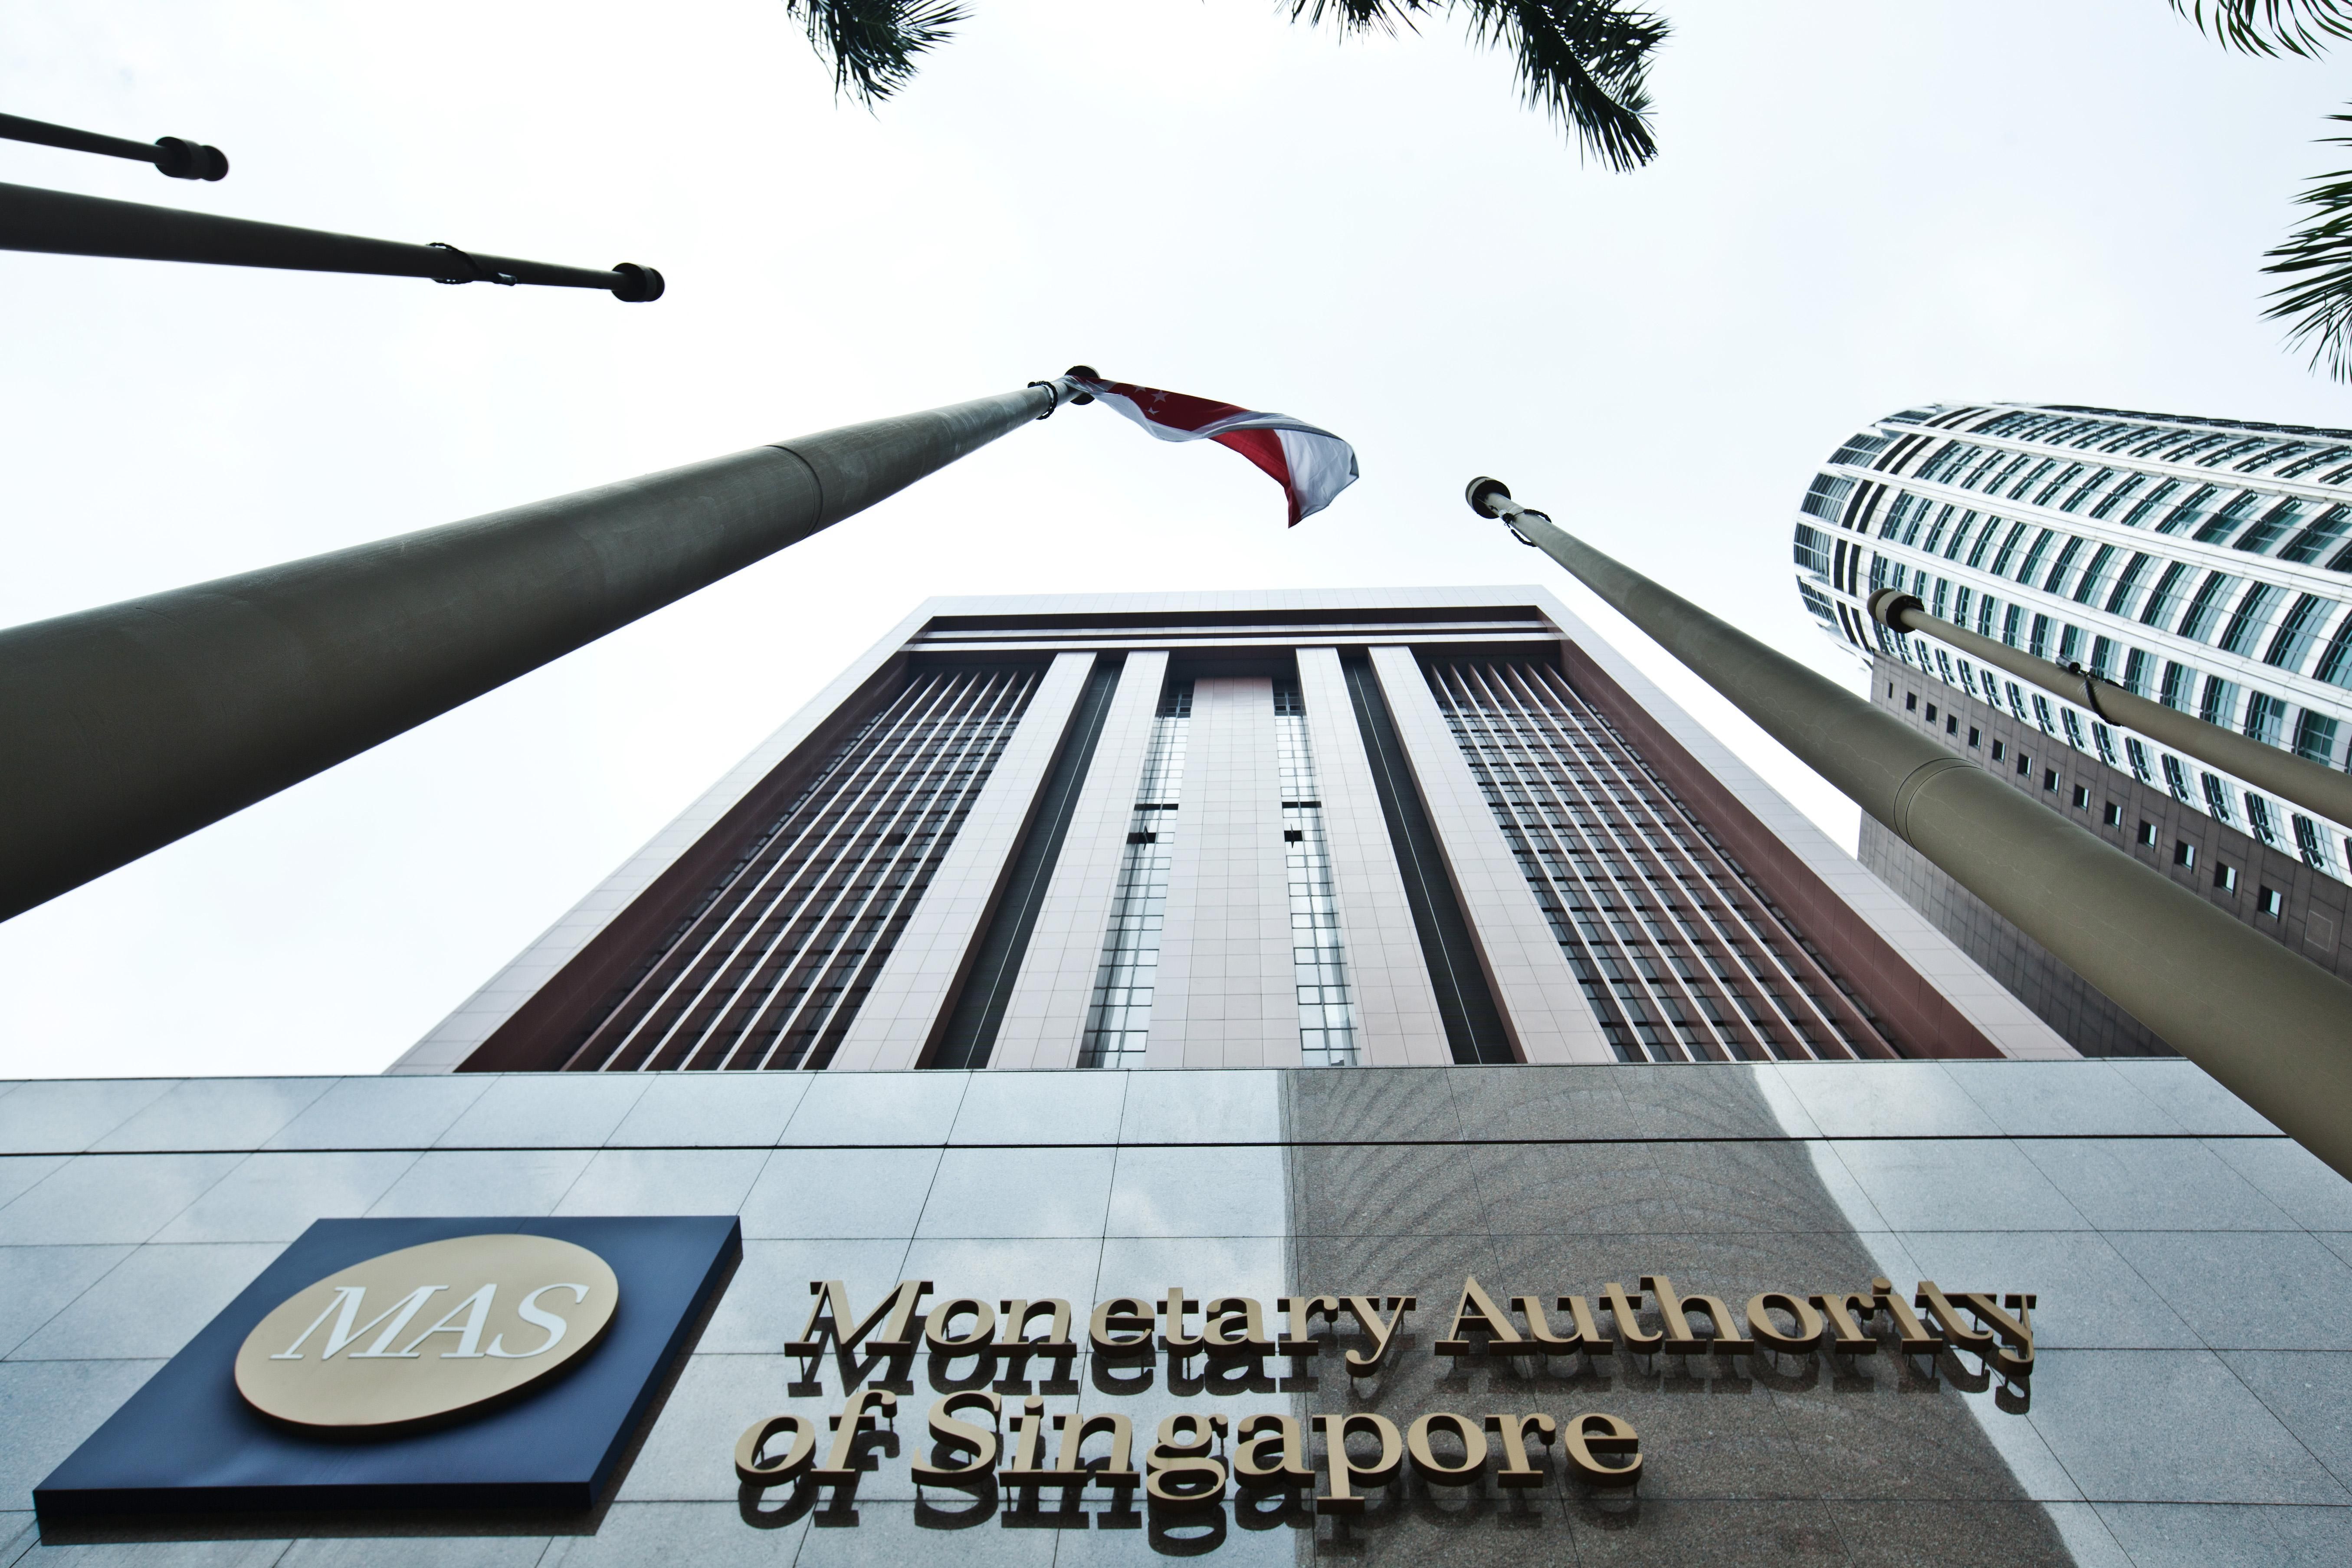 Сингапур назвал риски связанные с криптовалютами: планирует ли банк создавать цифровой доллар - новости биткоин - Финансы